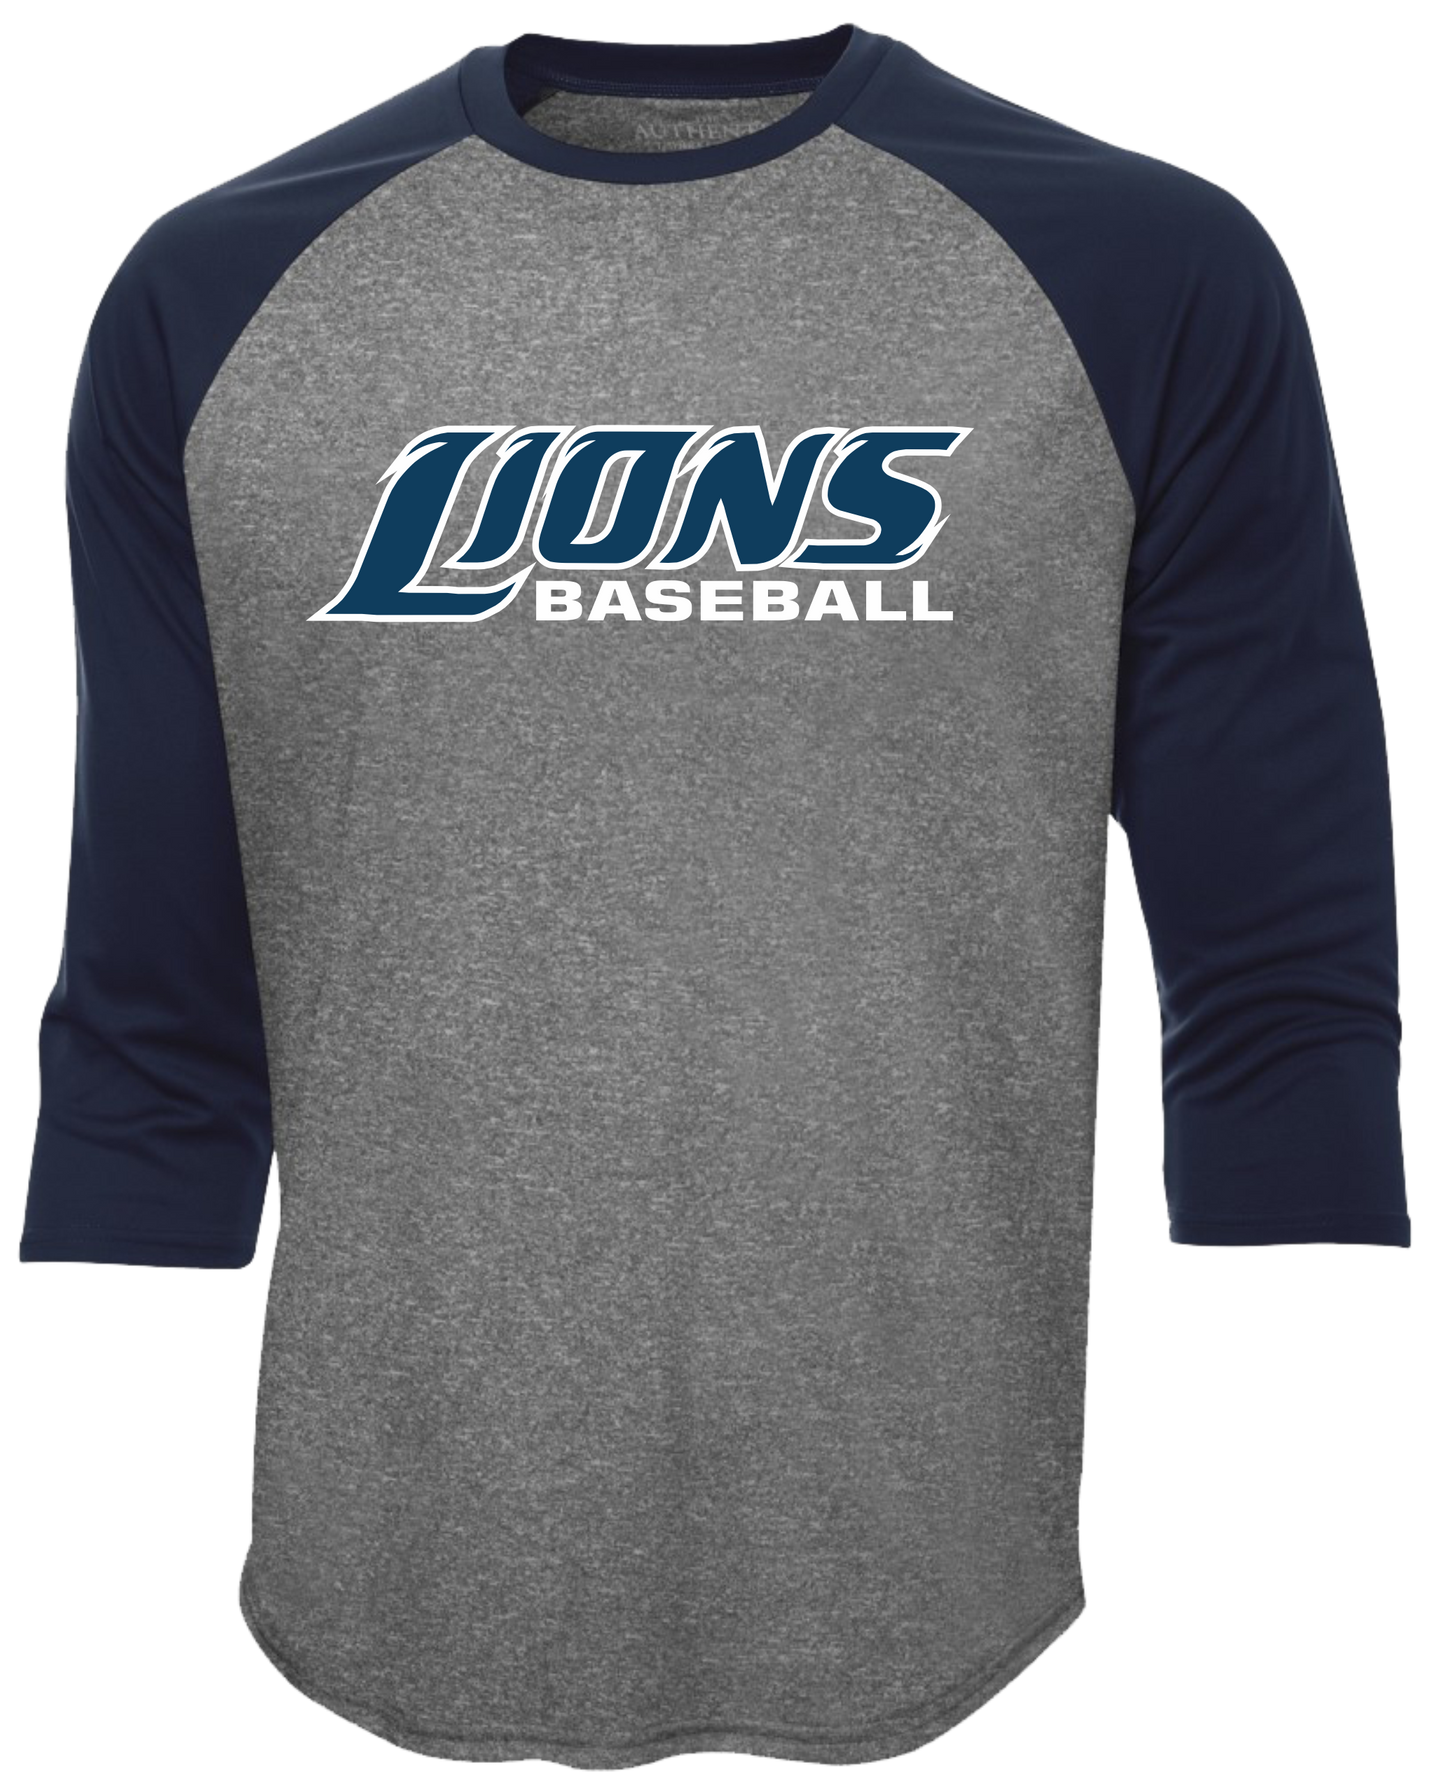 Lions Baseball 3/4 Sleeve Baseball Tshirt